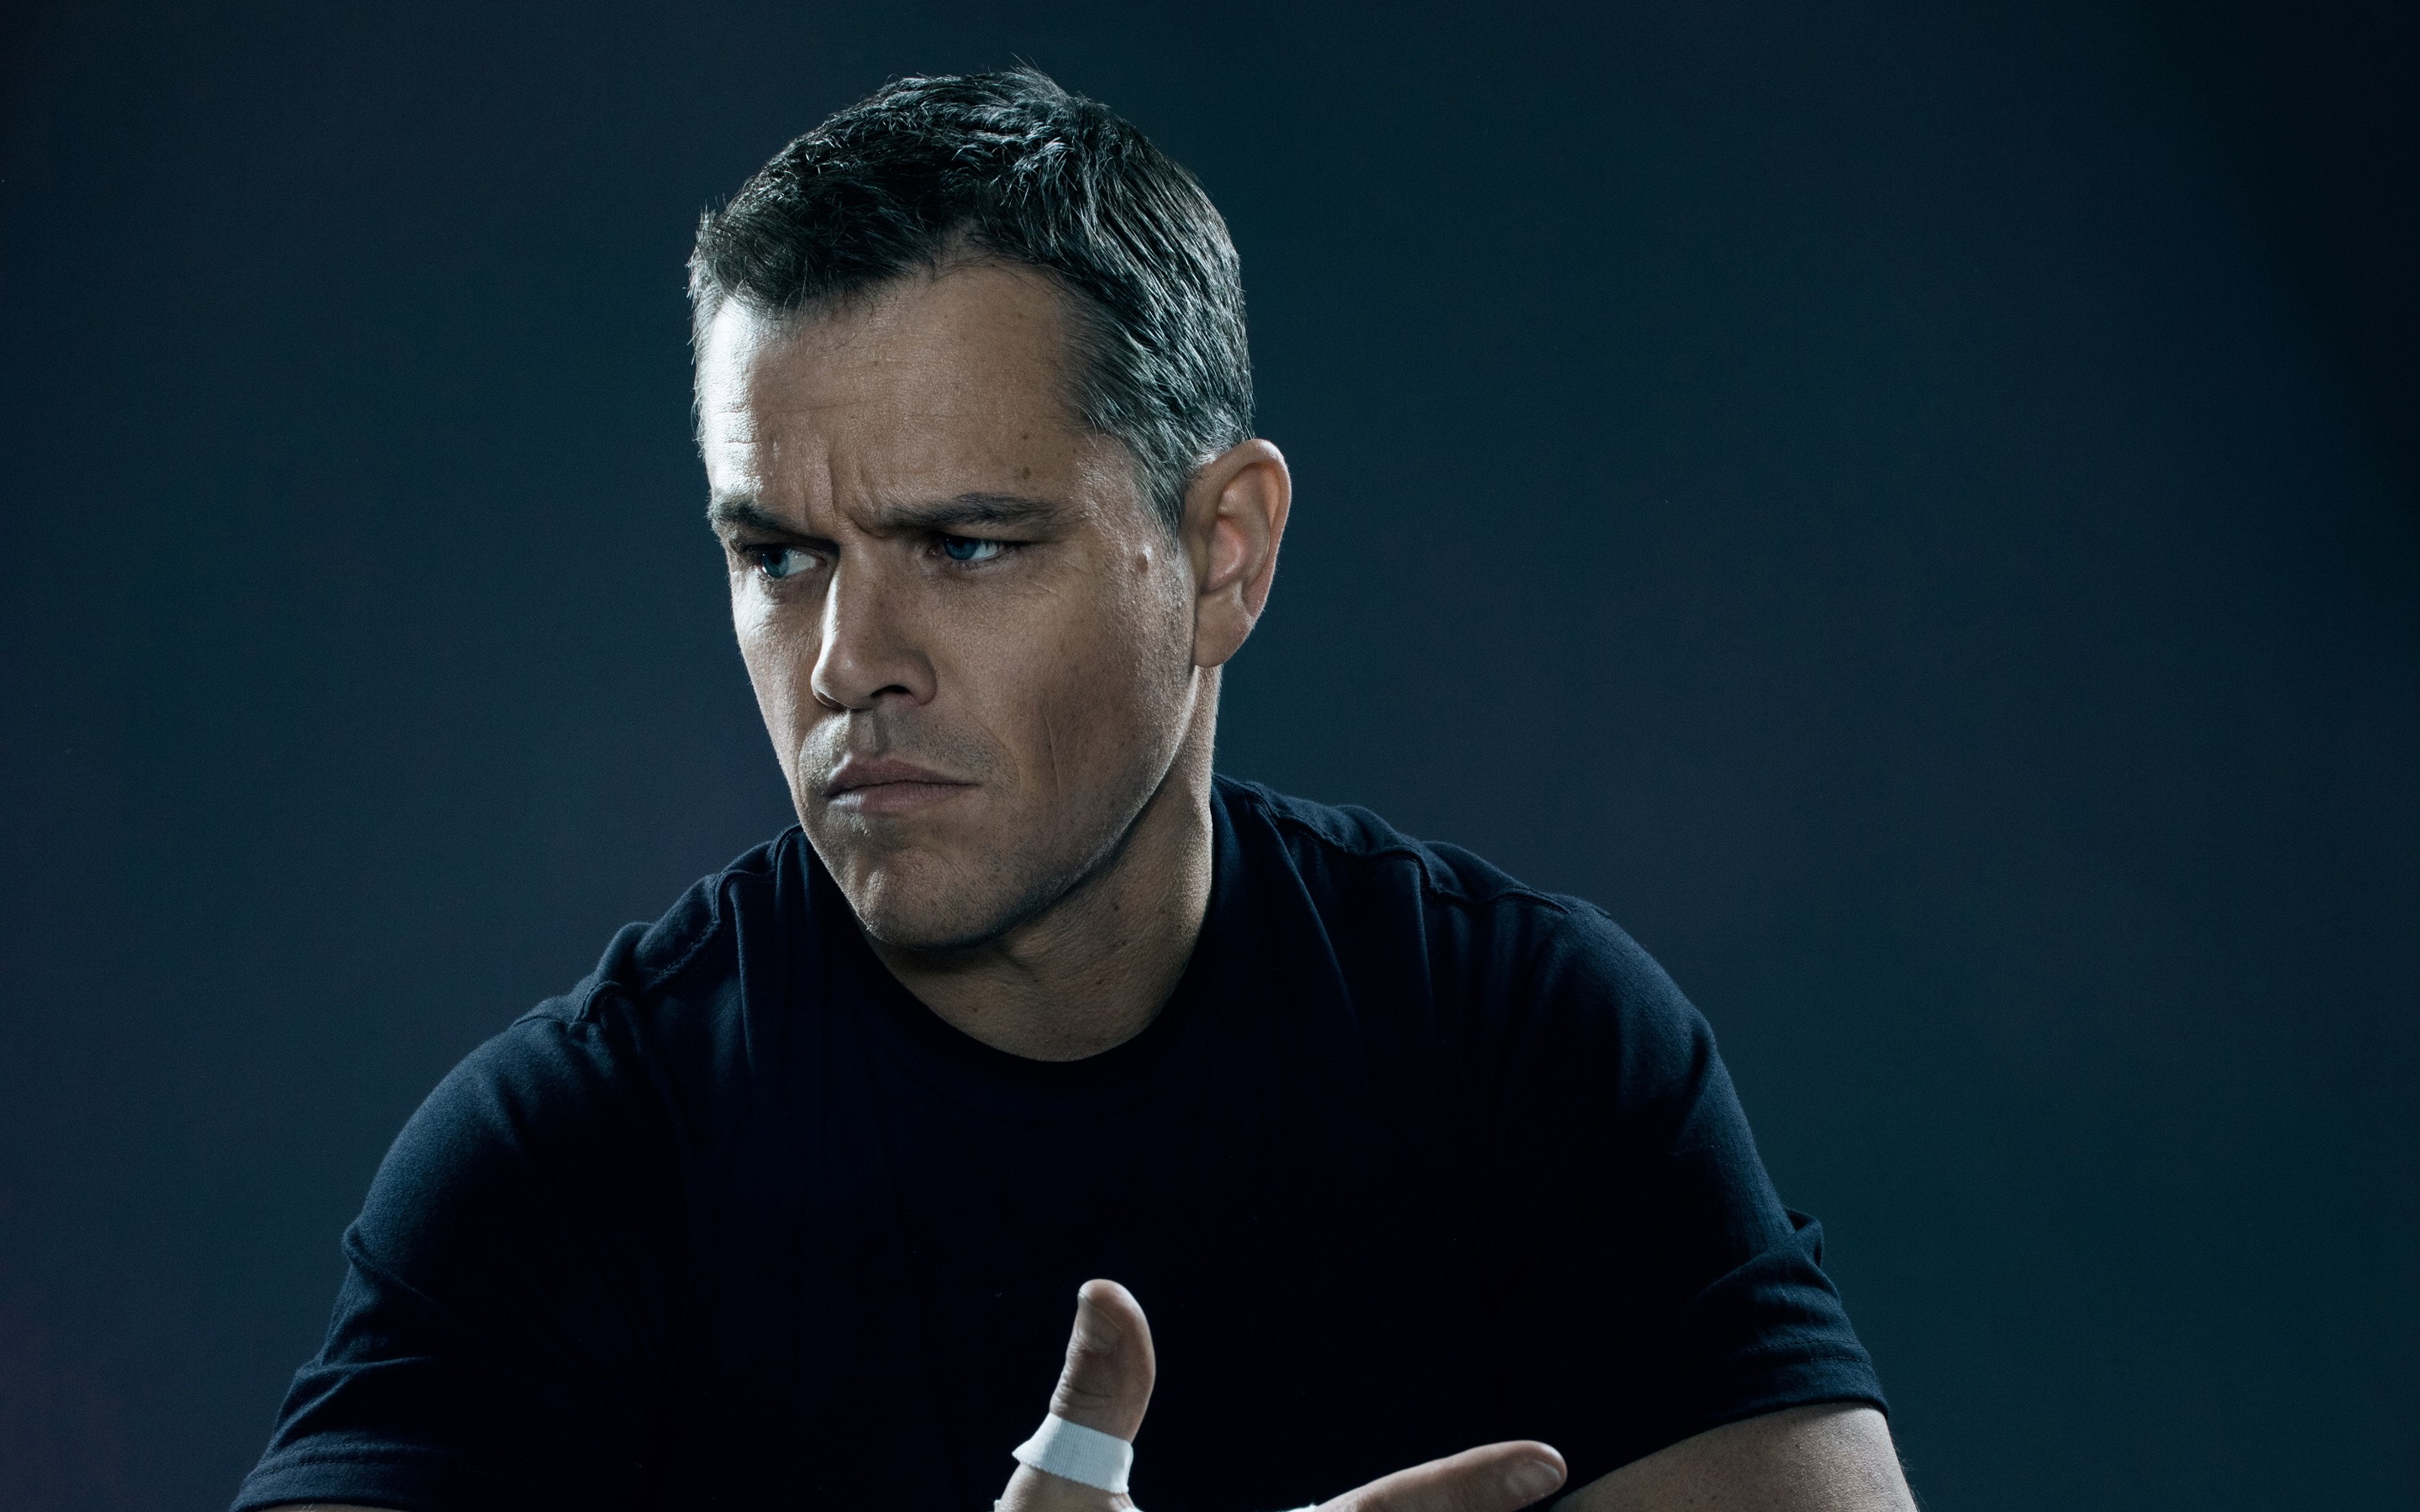 Matt Damon In Jason Bourne Wallpaper Other